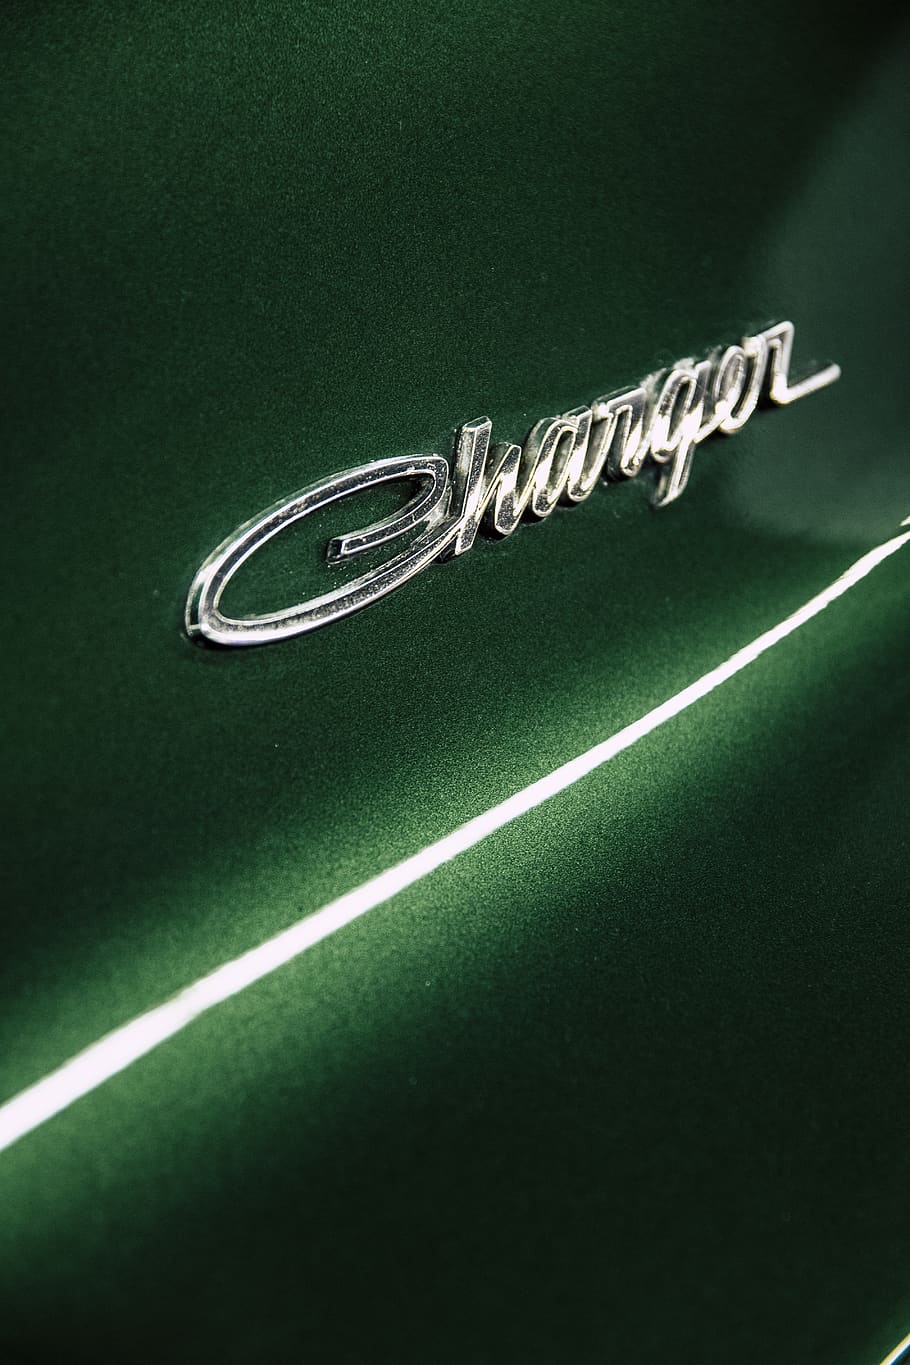 Dodge Charger Emblem, auto, automobile, automotive, brand, car, HD wallpaper